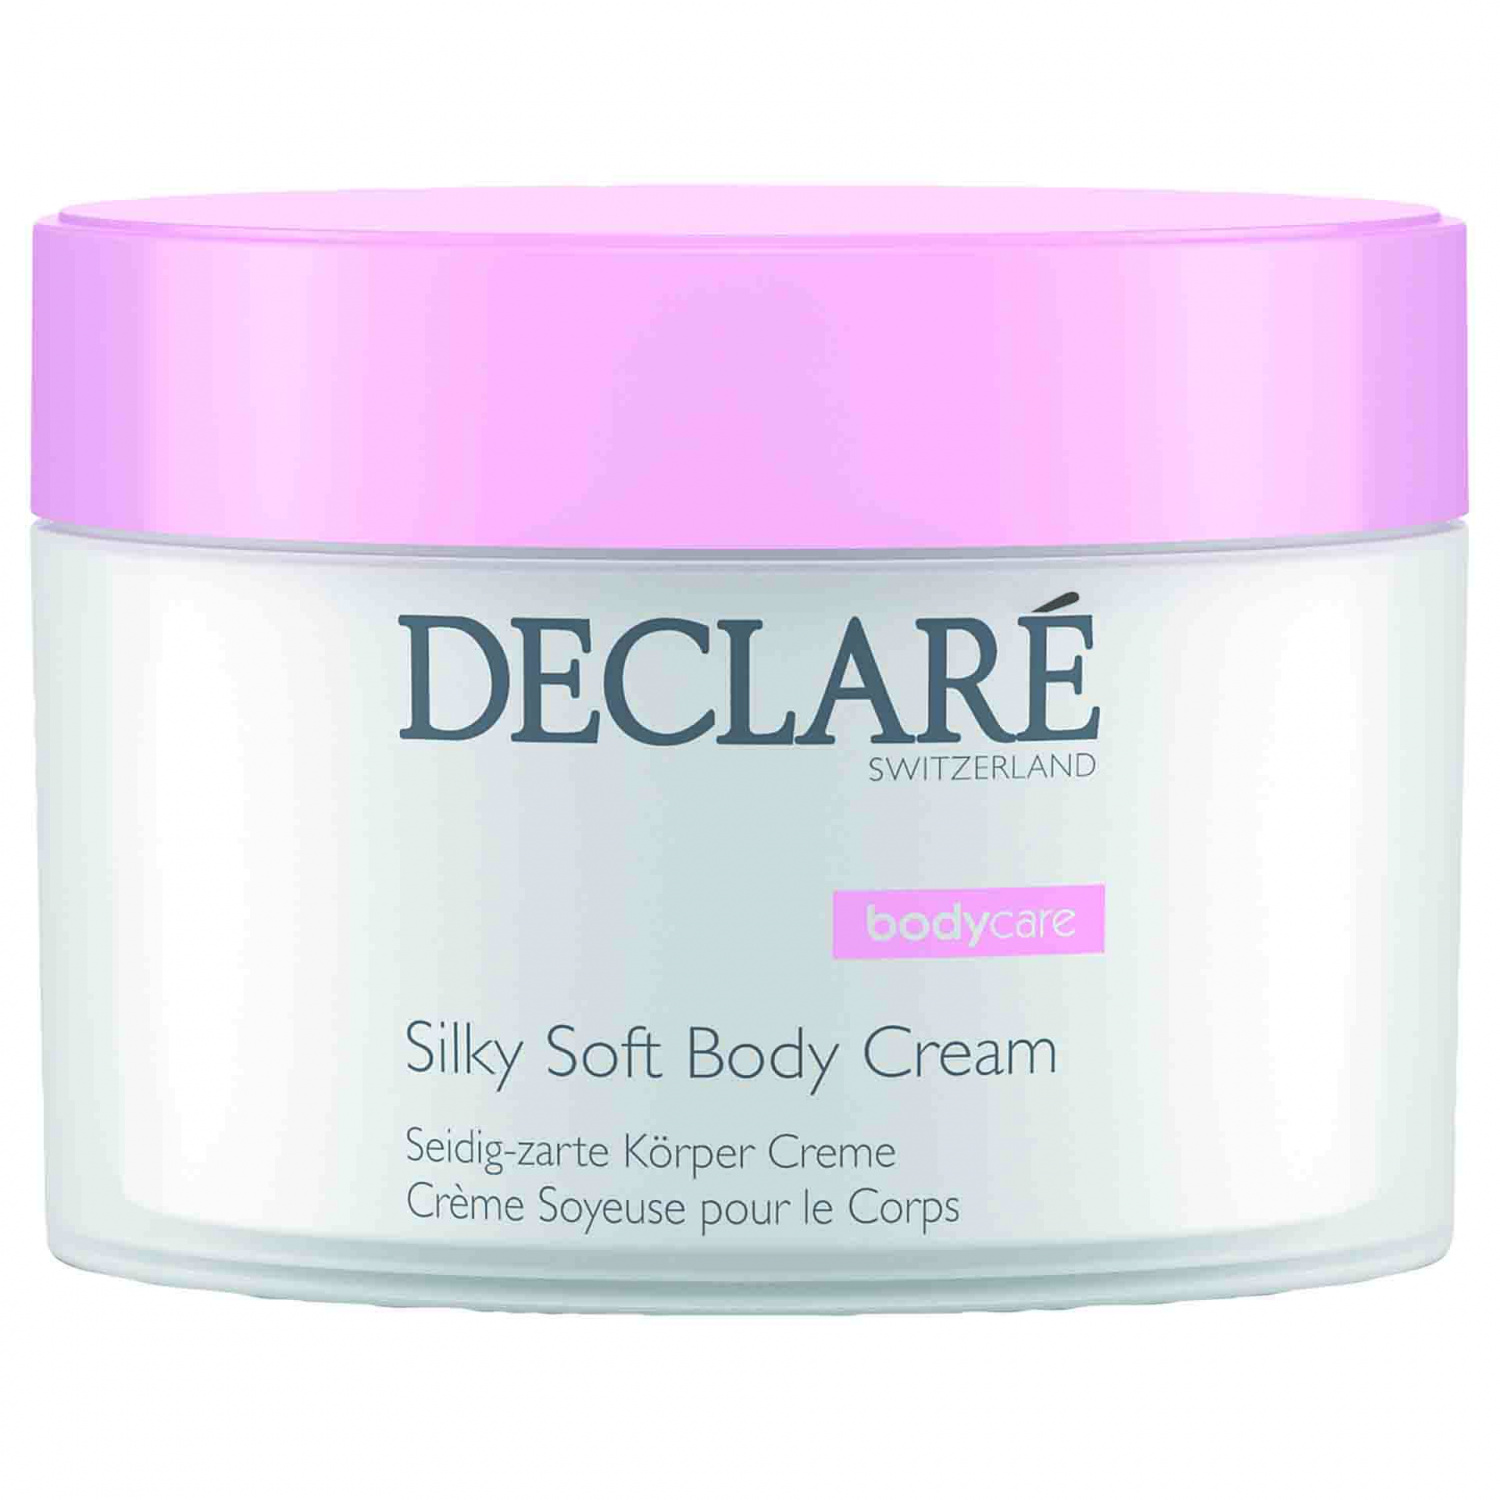 Declare Silky Soft Body Cream 200ml. - интернет-магазин профессиональной косметики Spadream, изображение 30785